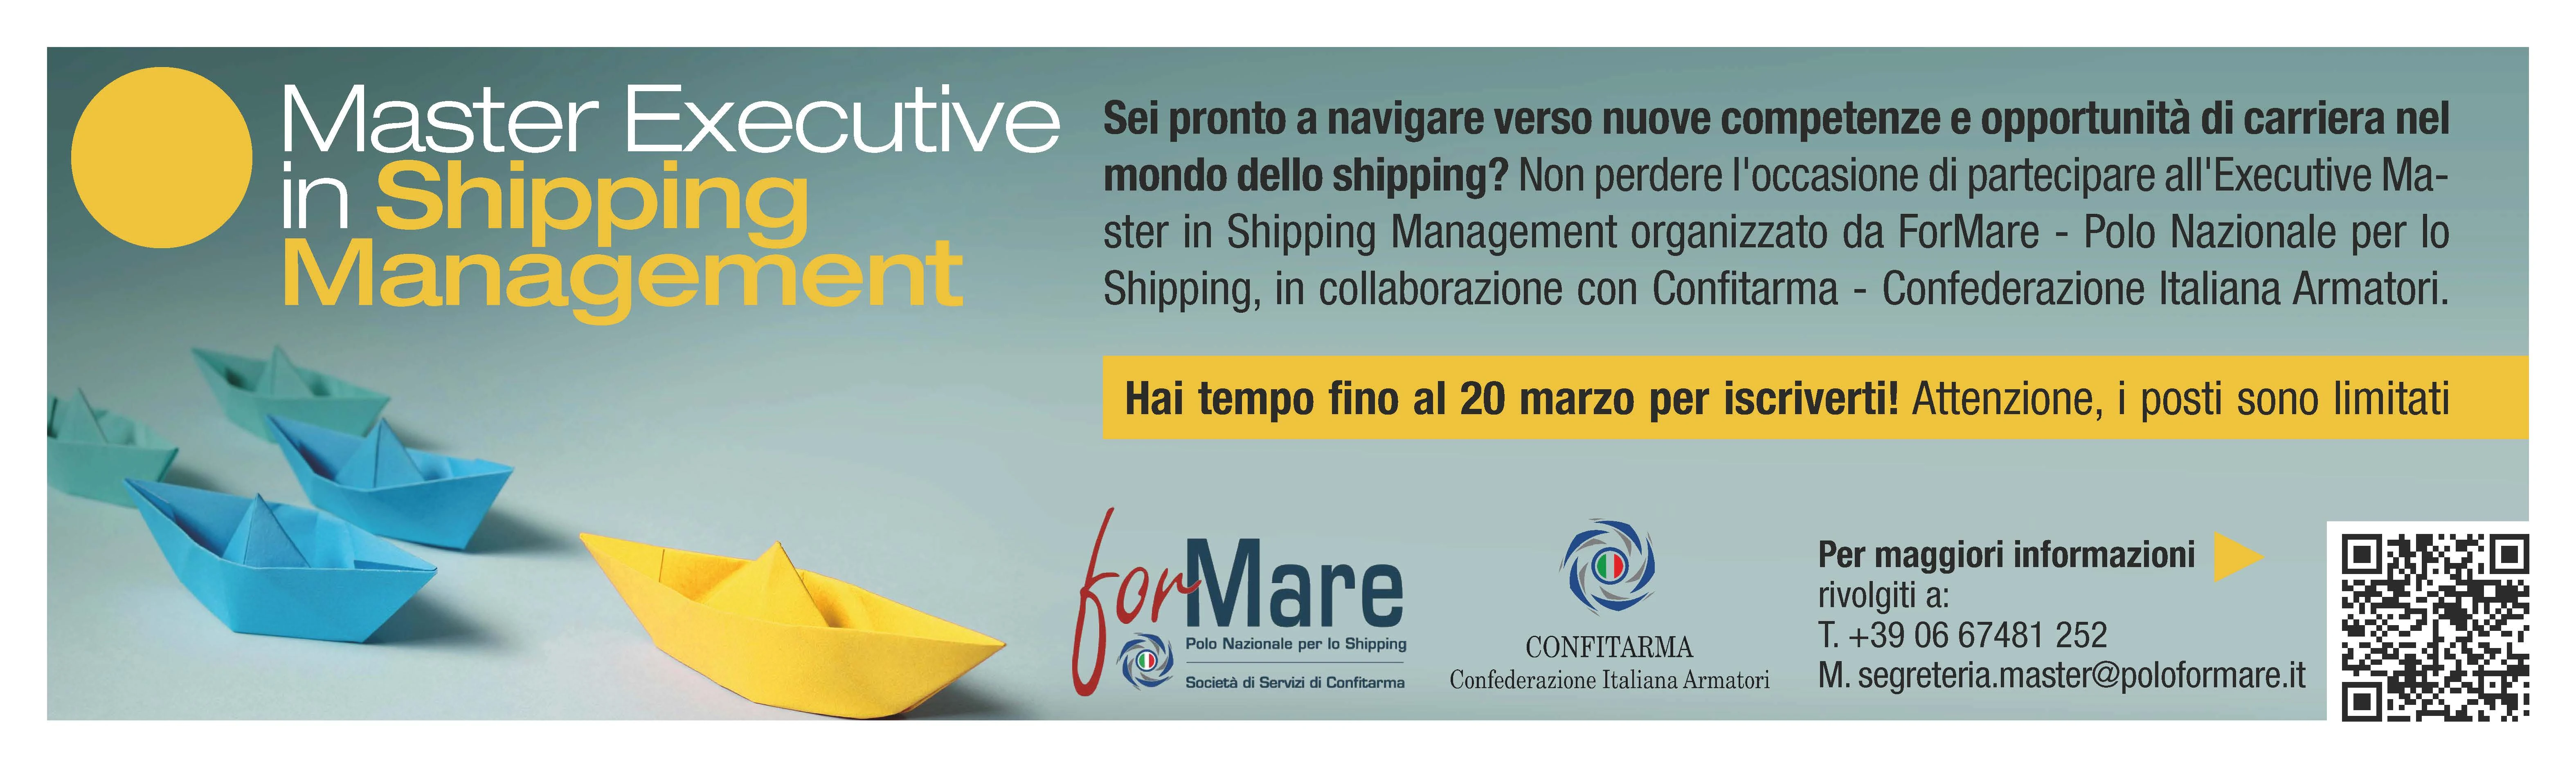 Primo Master Executive in Shipping Management di ForMare e Confitarma